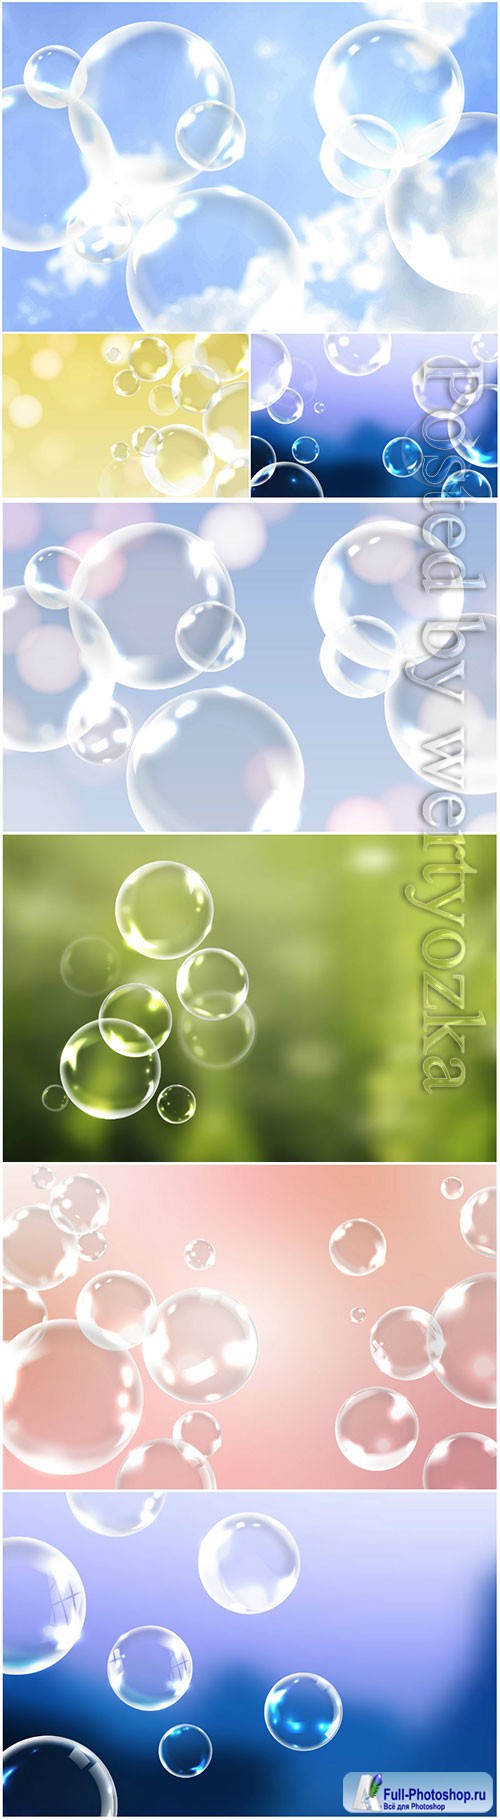 Soap bubbles vector background decoration